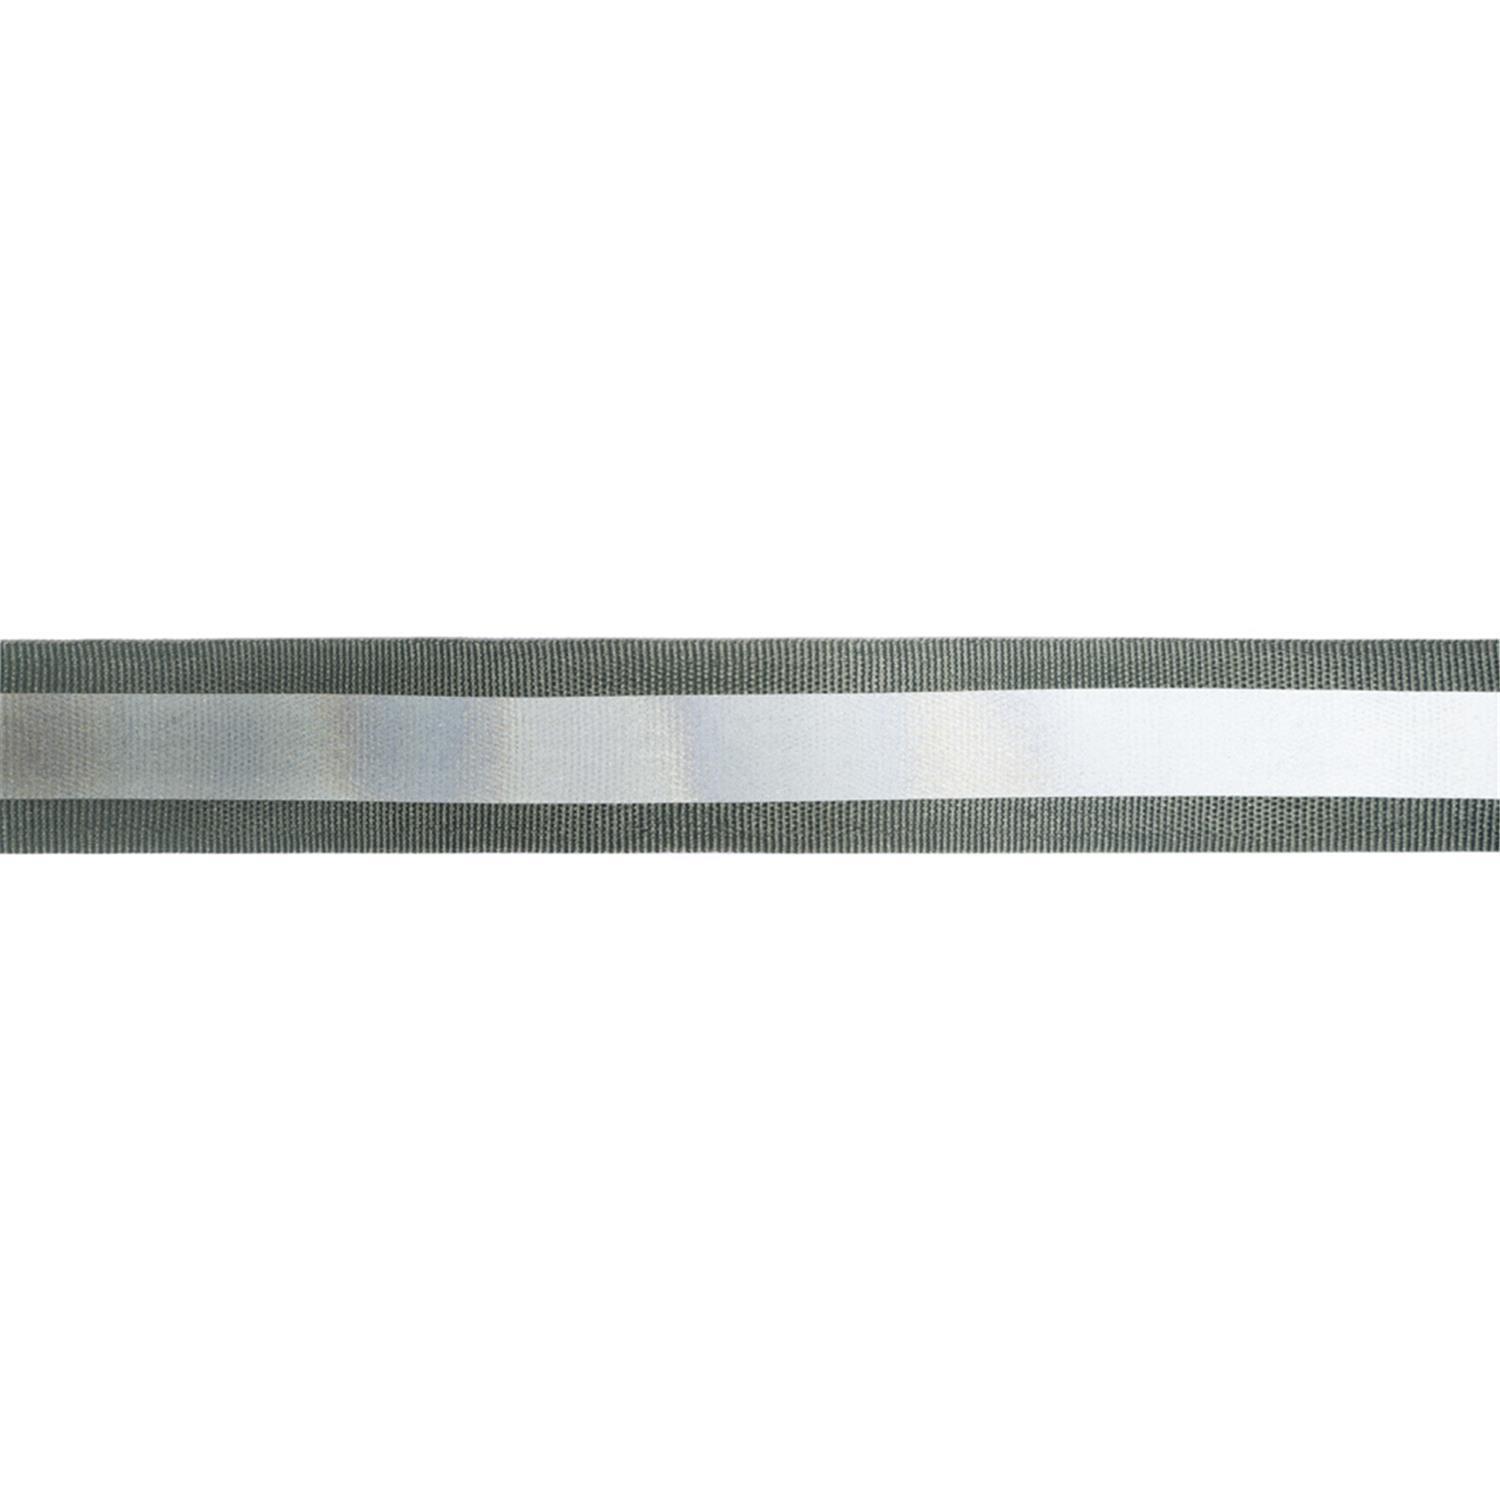 10 m Reflektor- / Leuchtband, 20mm breit Farbe: grau-silber